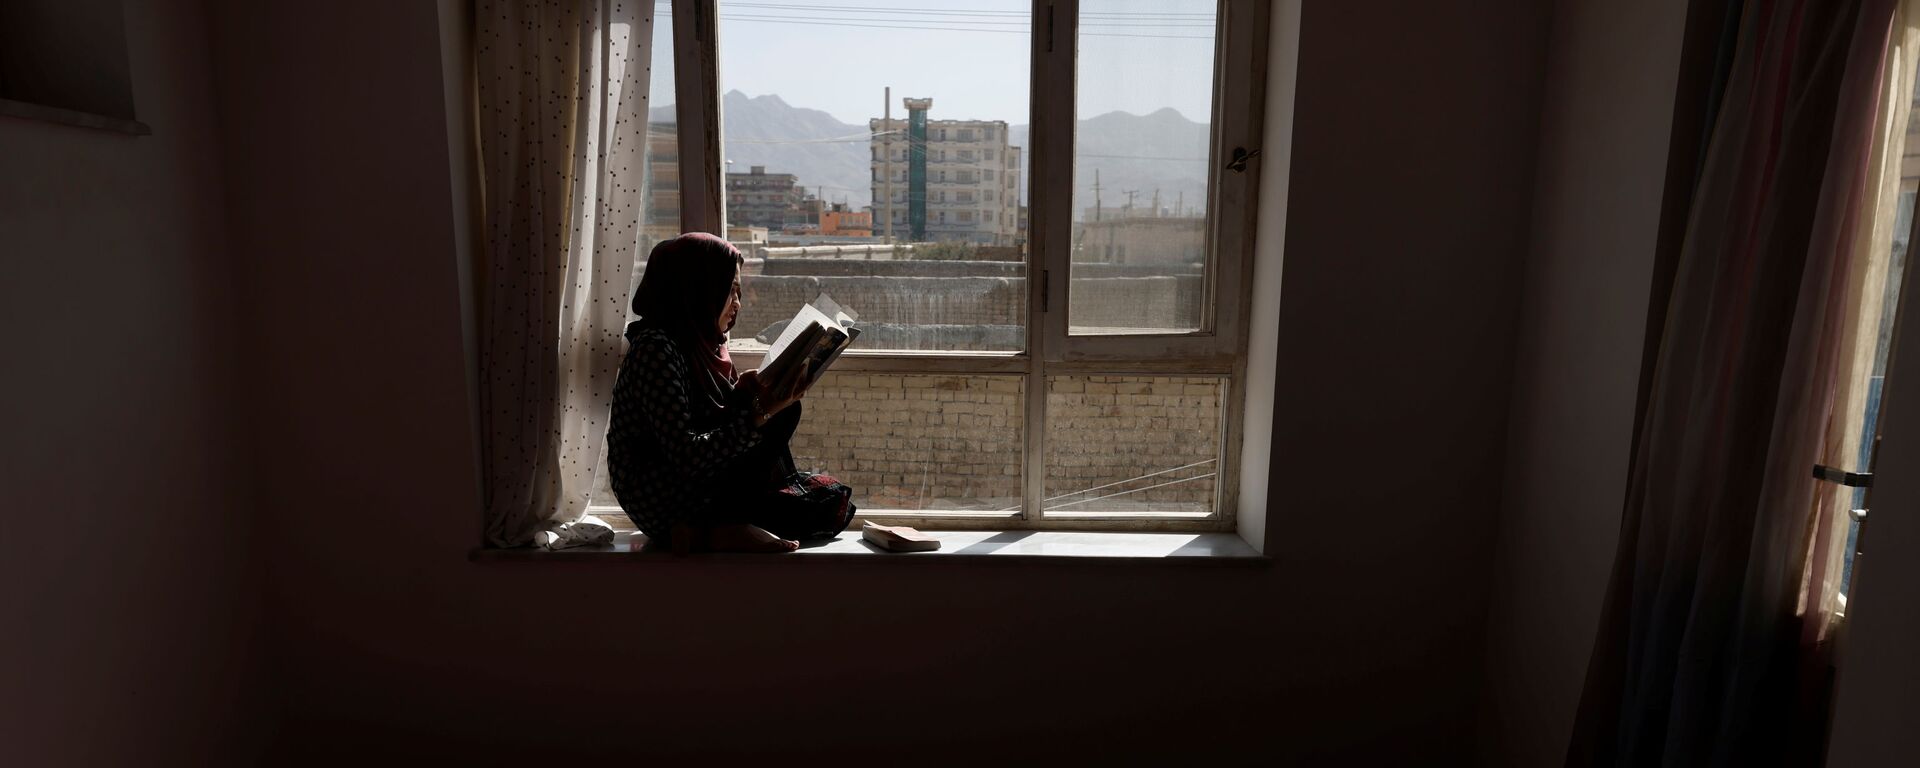 20-летняя студентка Хава читает книгу на подоконнике своего дома в Кабуле, Афганистан - Sputnik Latvija, 1920, 10.11.2021